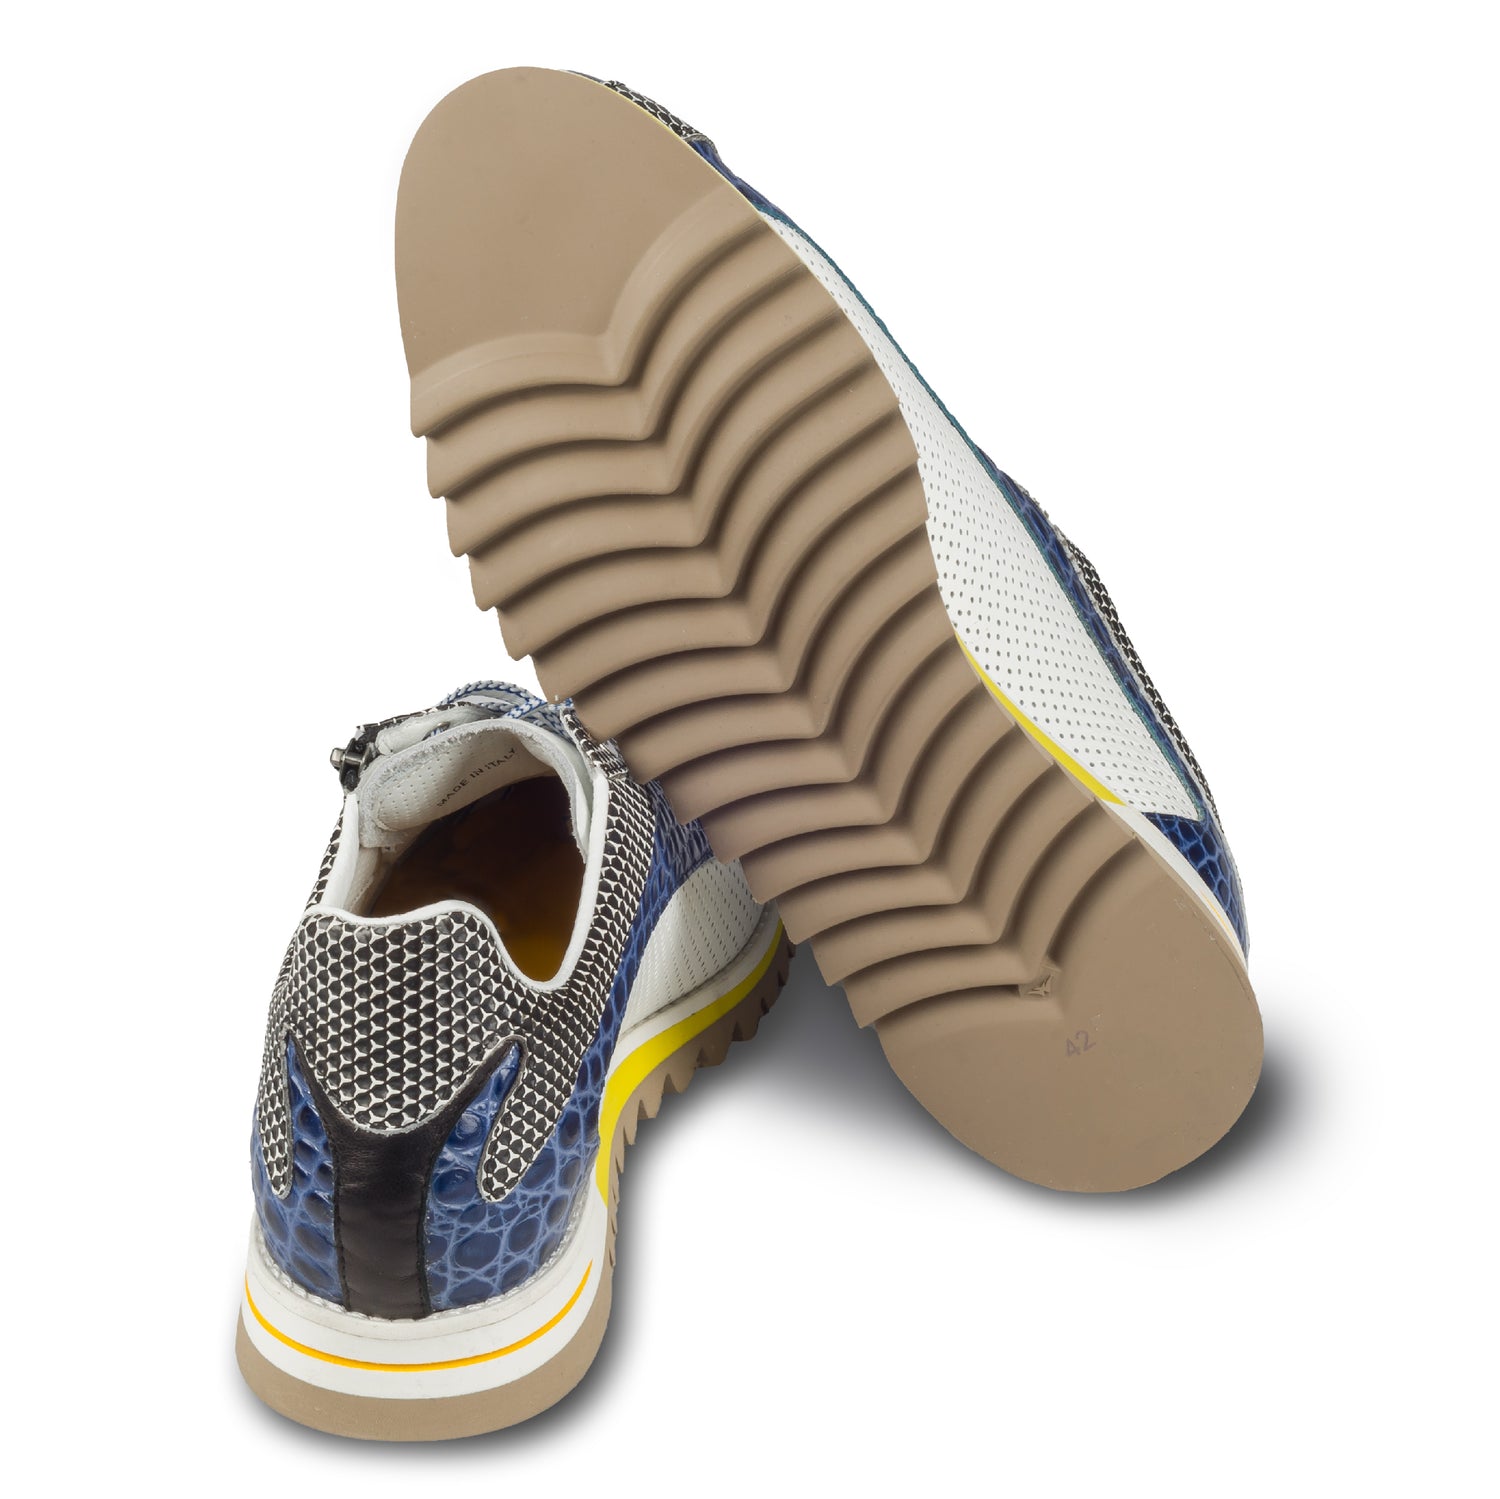 Lorenzi Herren Leder-Sneaker mit raffinierter Prägung und Reißverschluß, in blau / schwarz / weiß. Handgefertigt. Ansicht der Ferse und Sohlenunterseite.